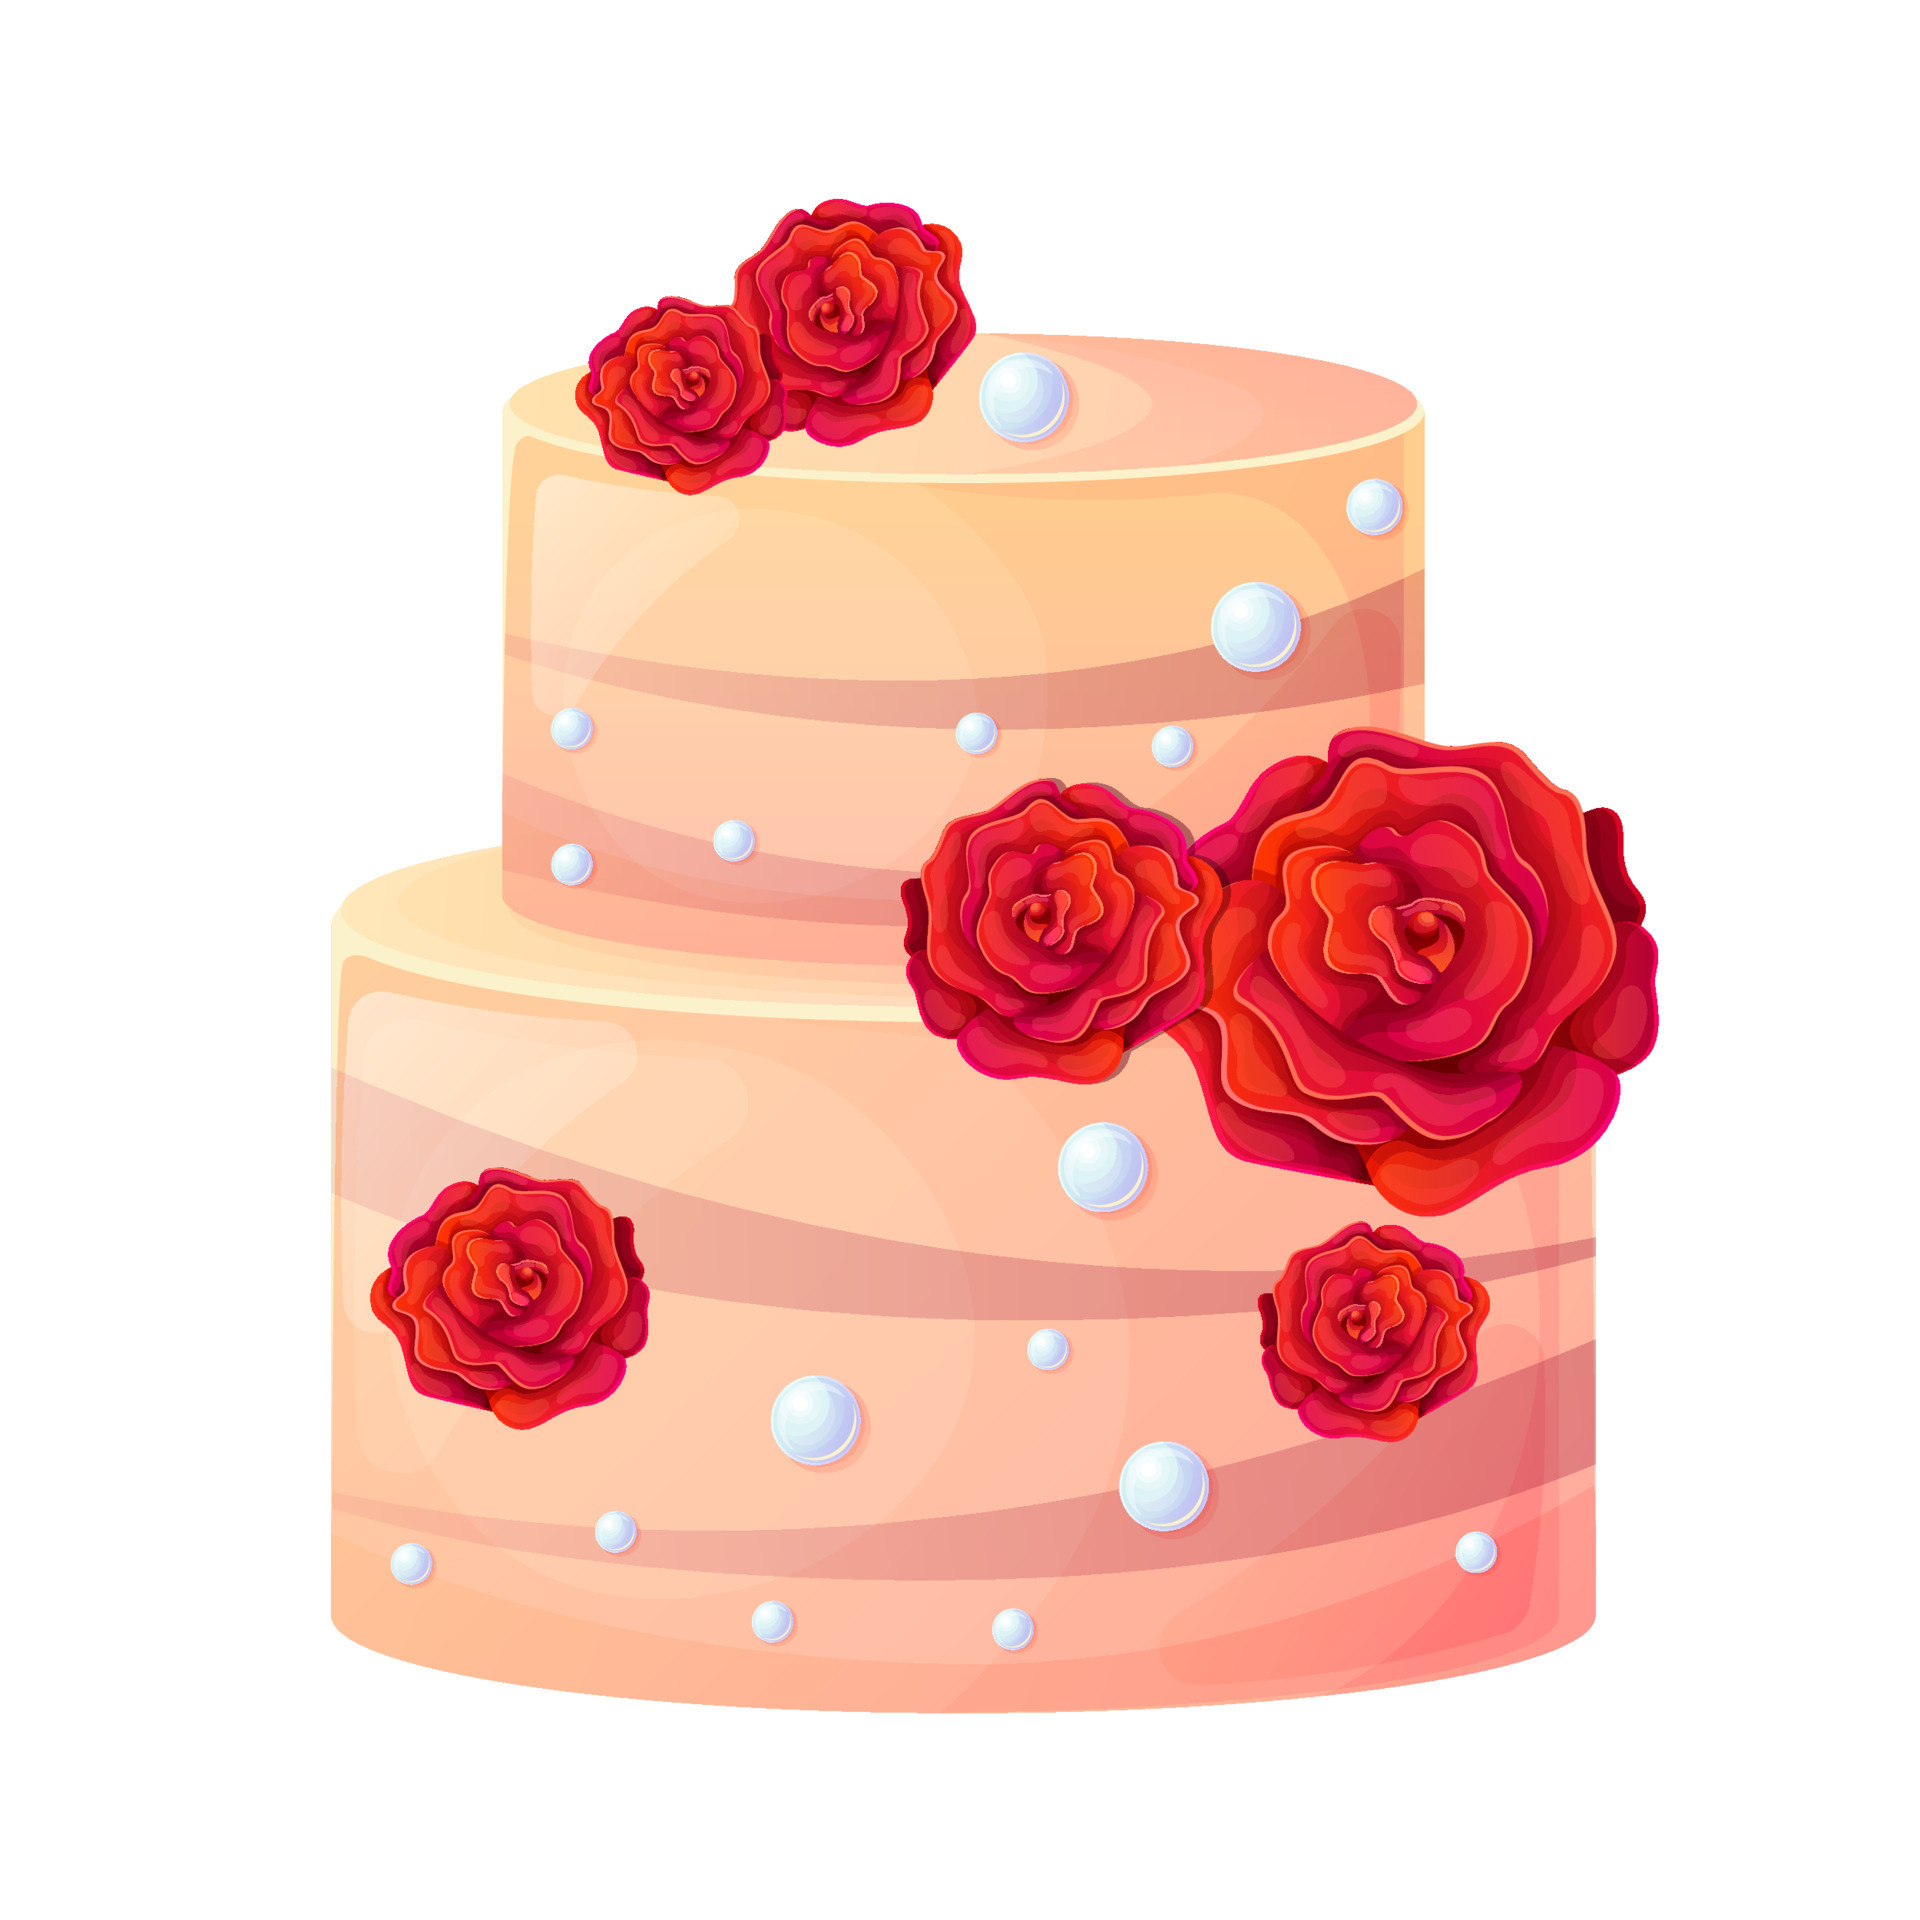 Imagem relacionada  Decorações de bolo de casamento, Bolo